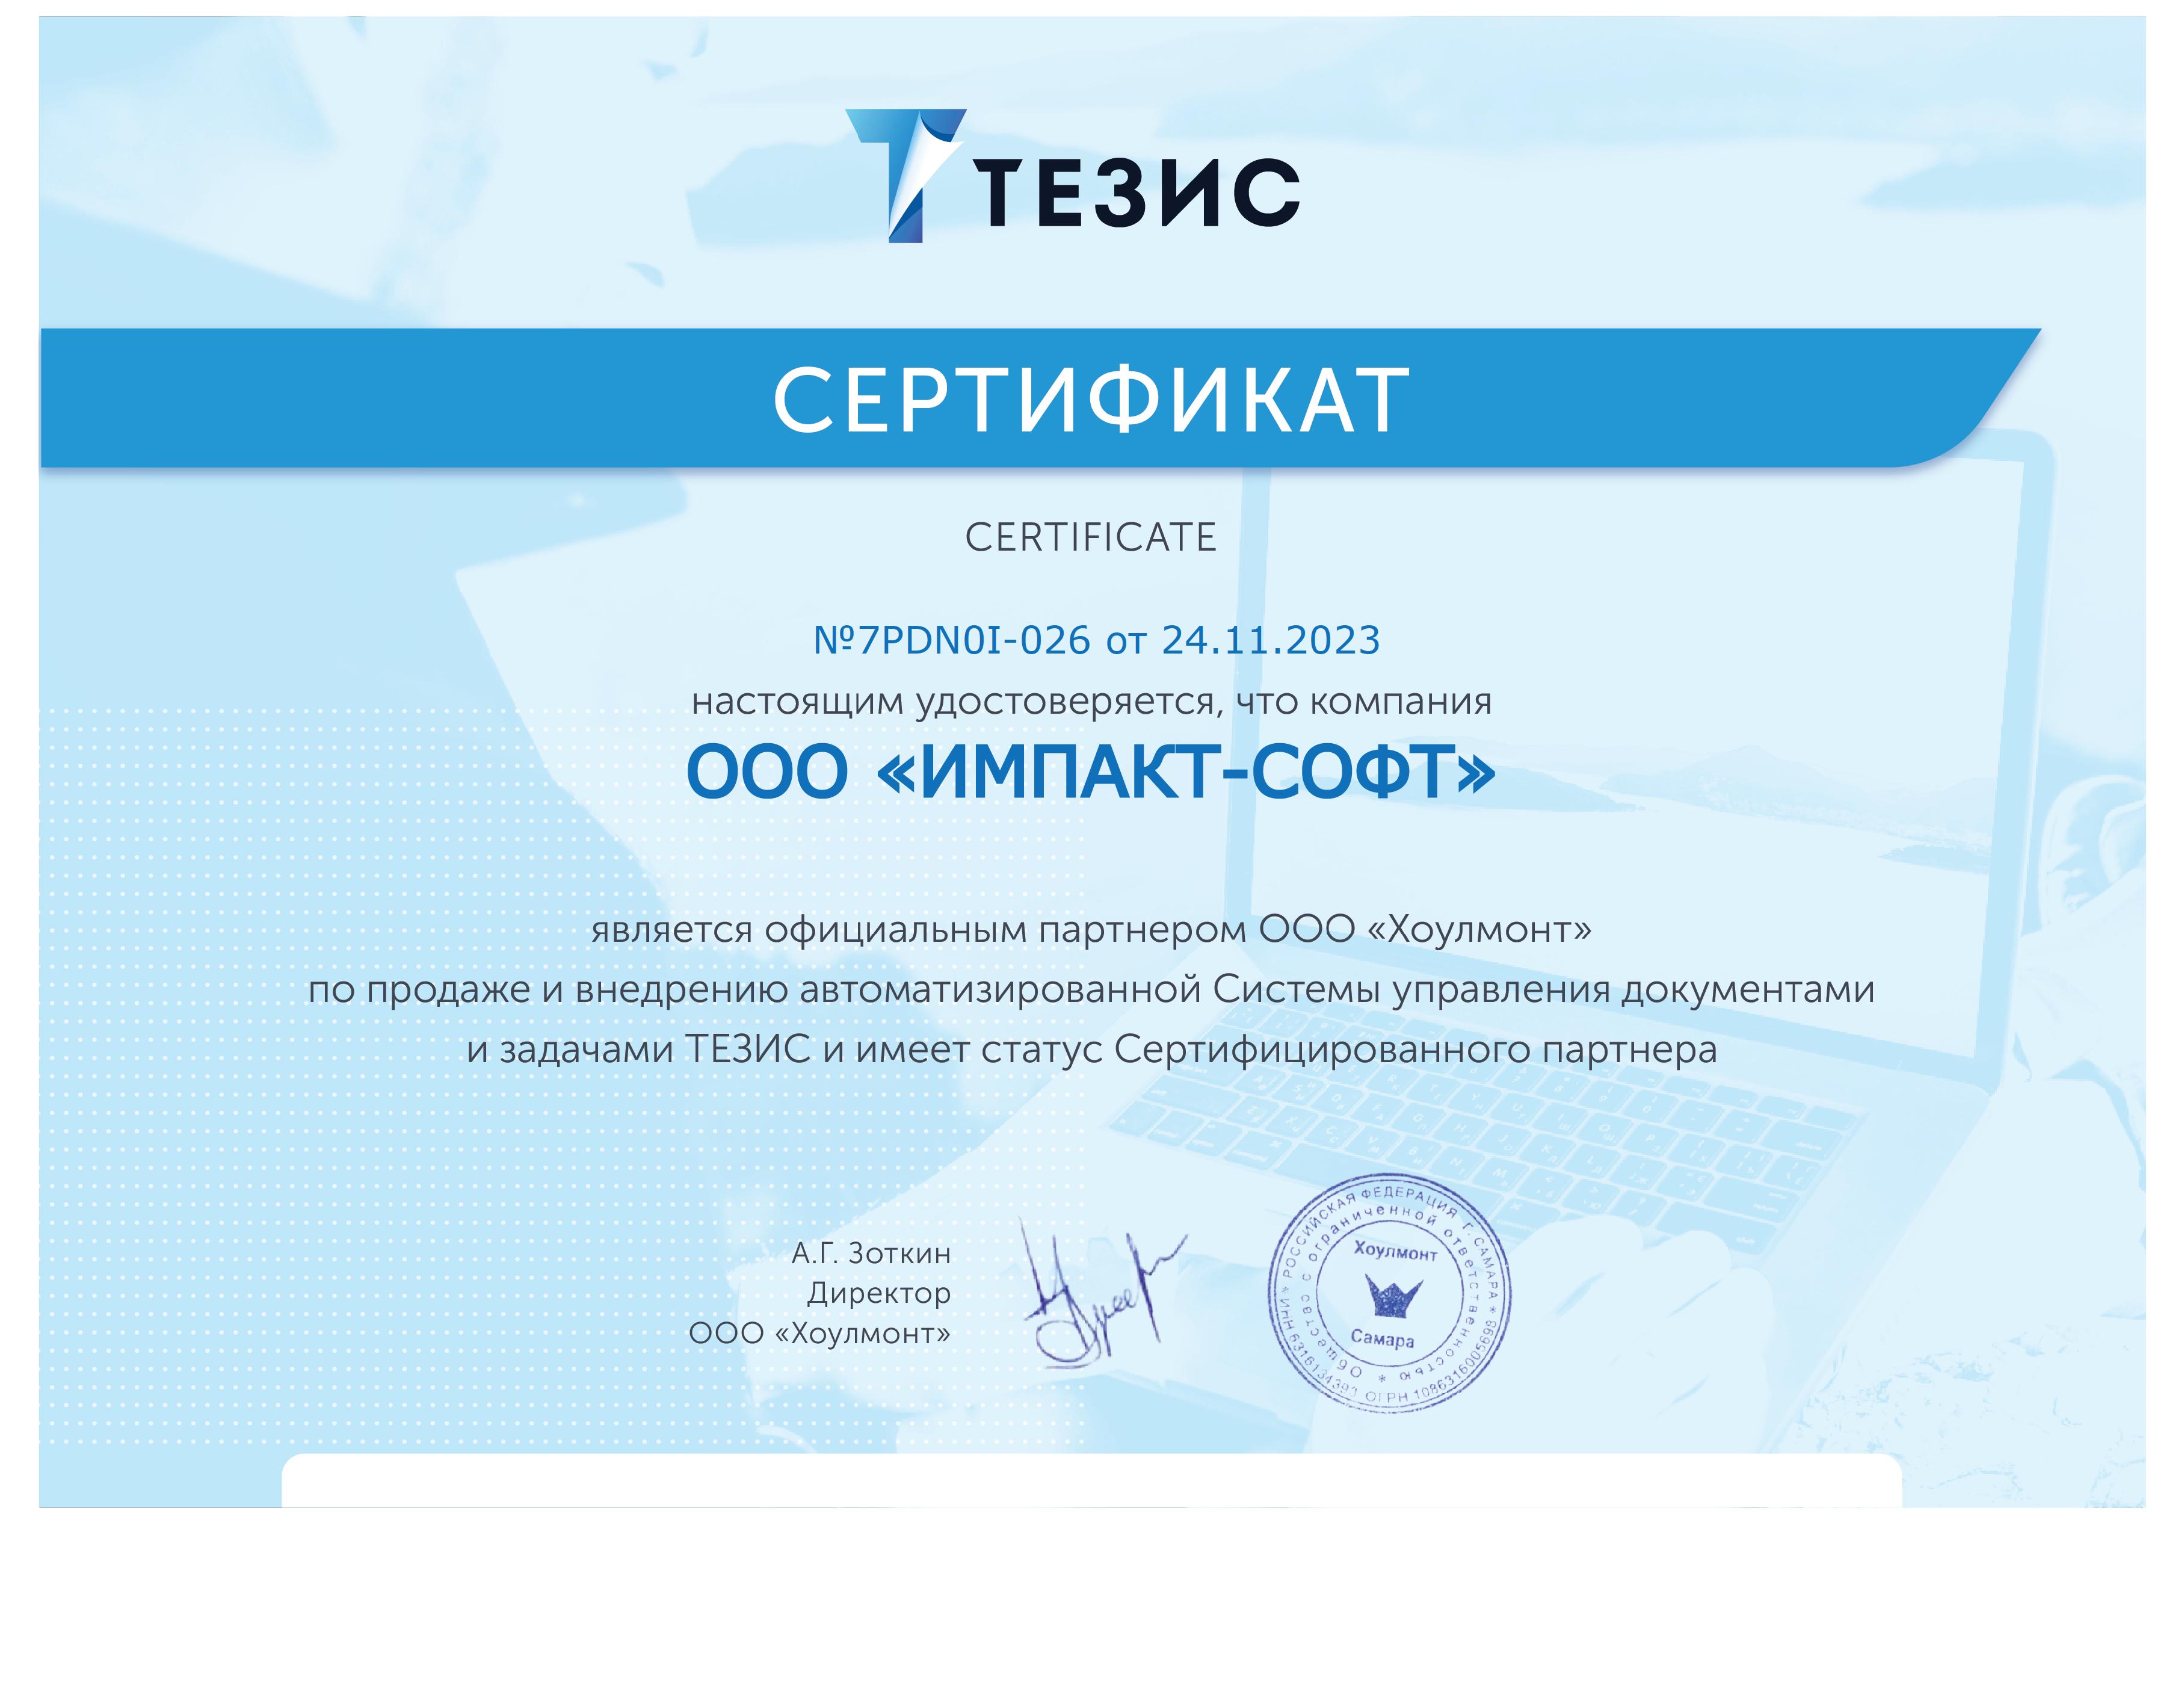 Сертификат партнера Тезис